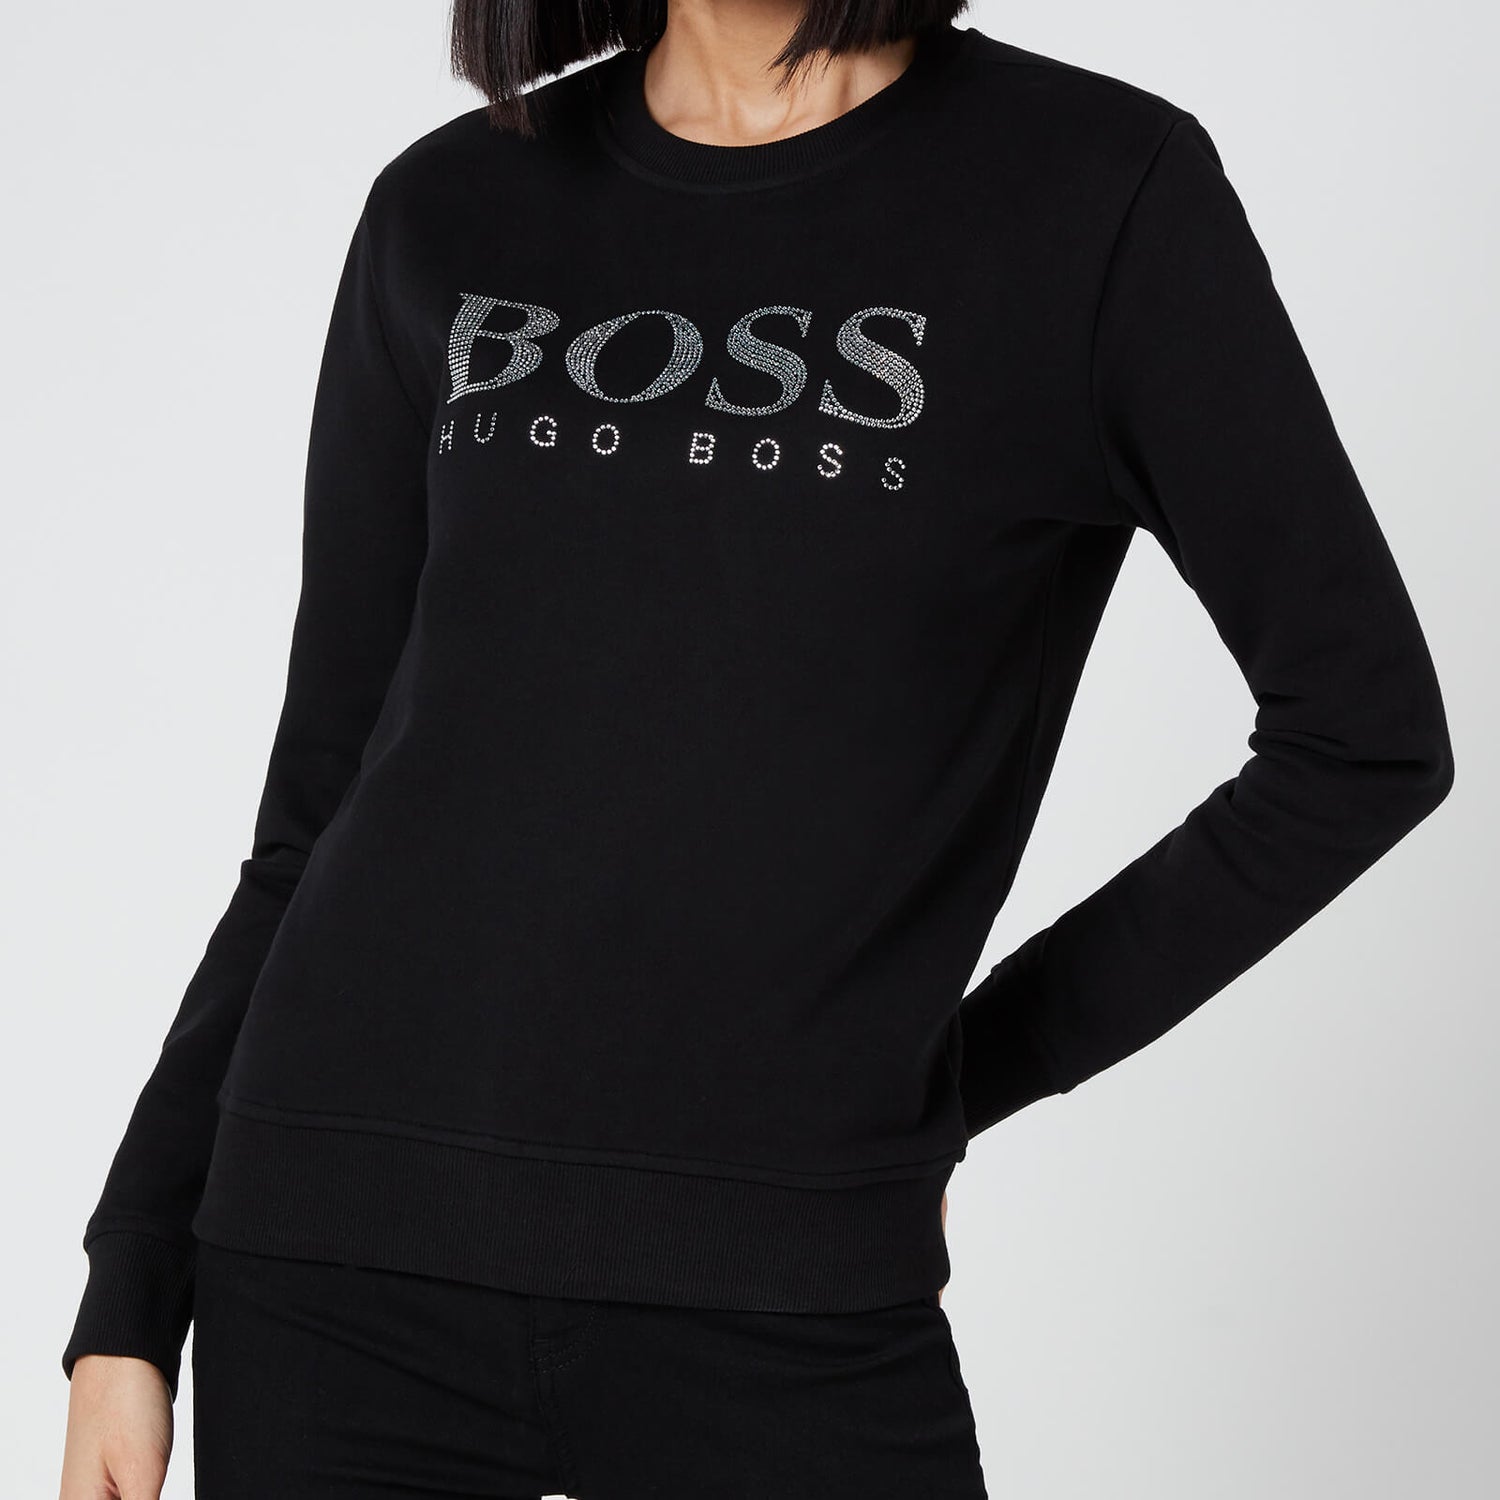 BOSS Women's Ebossa Sweatshirt - Black